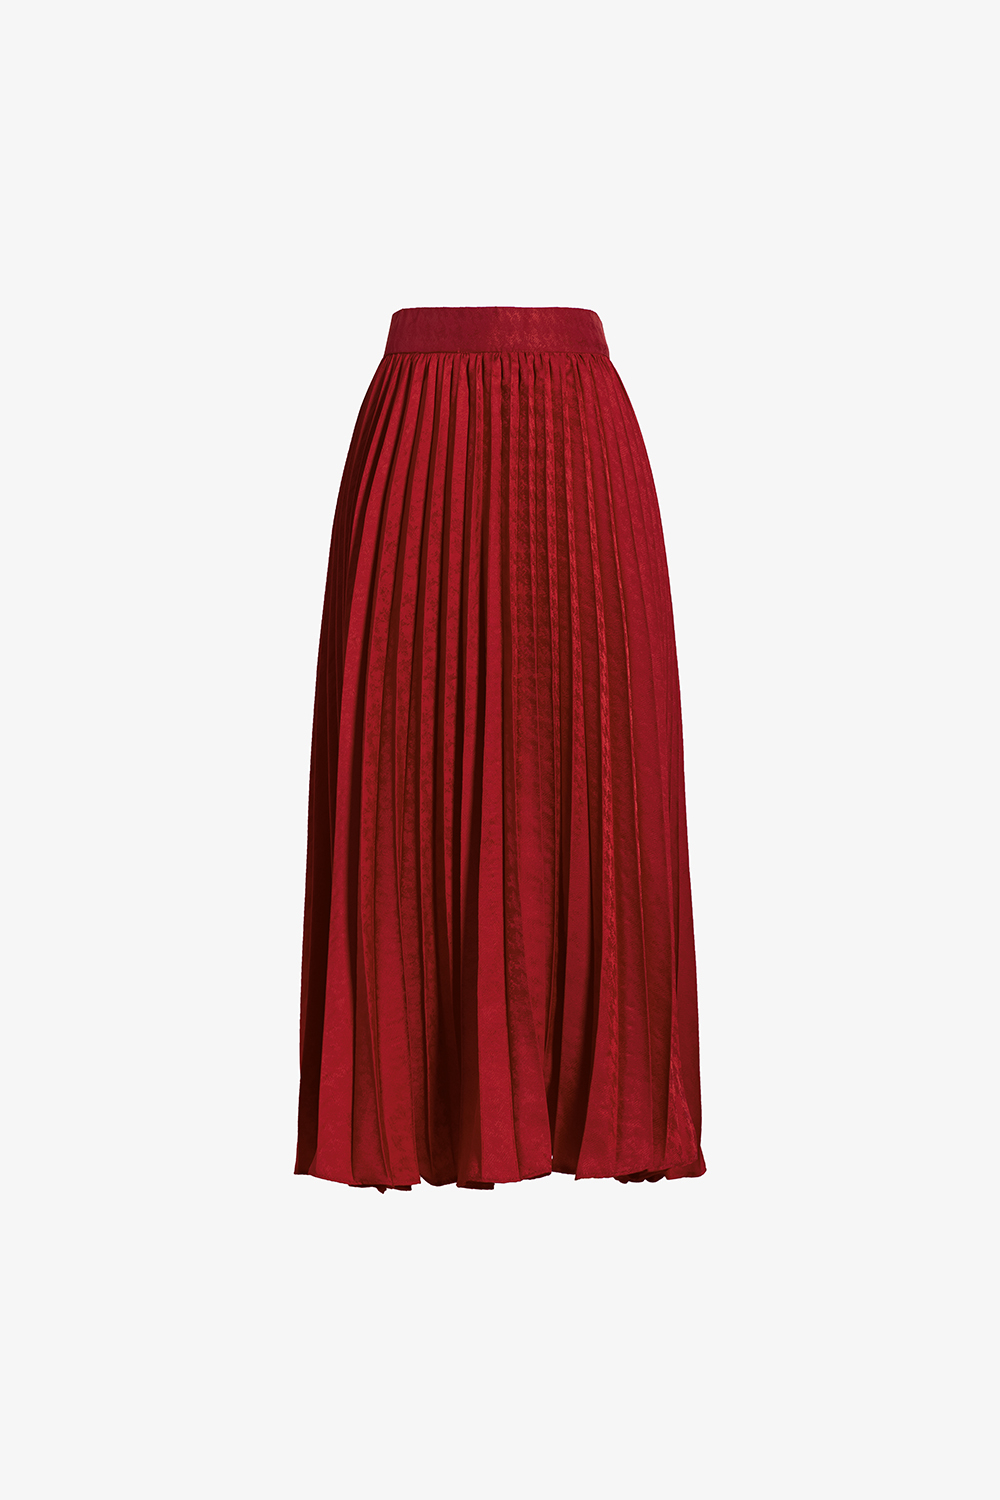 chân váy đỏ (xoè 260cm) dài tầng phong cách boho - Chân váy | ThờiTrangNữ.vn